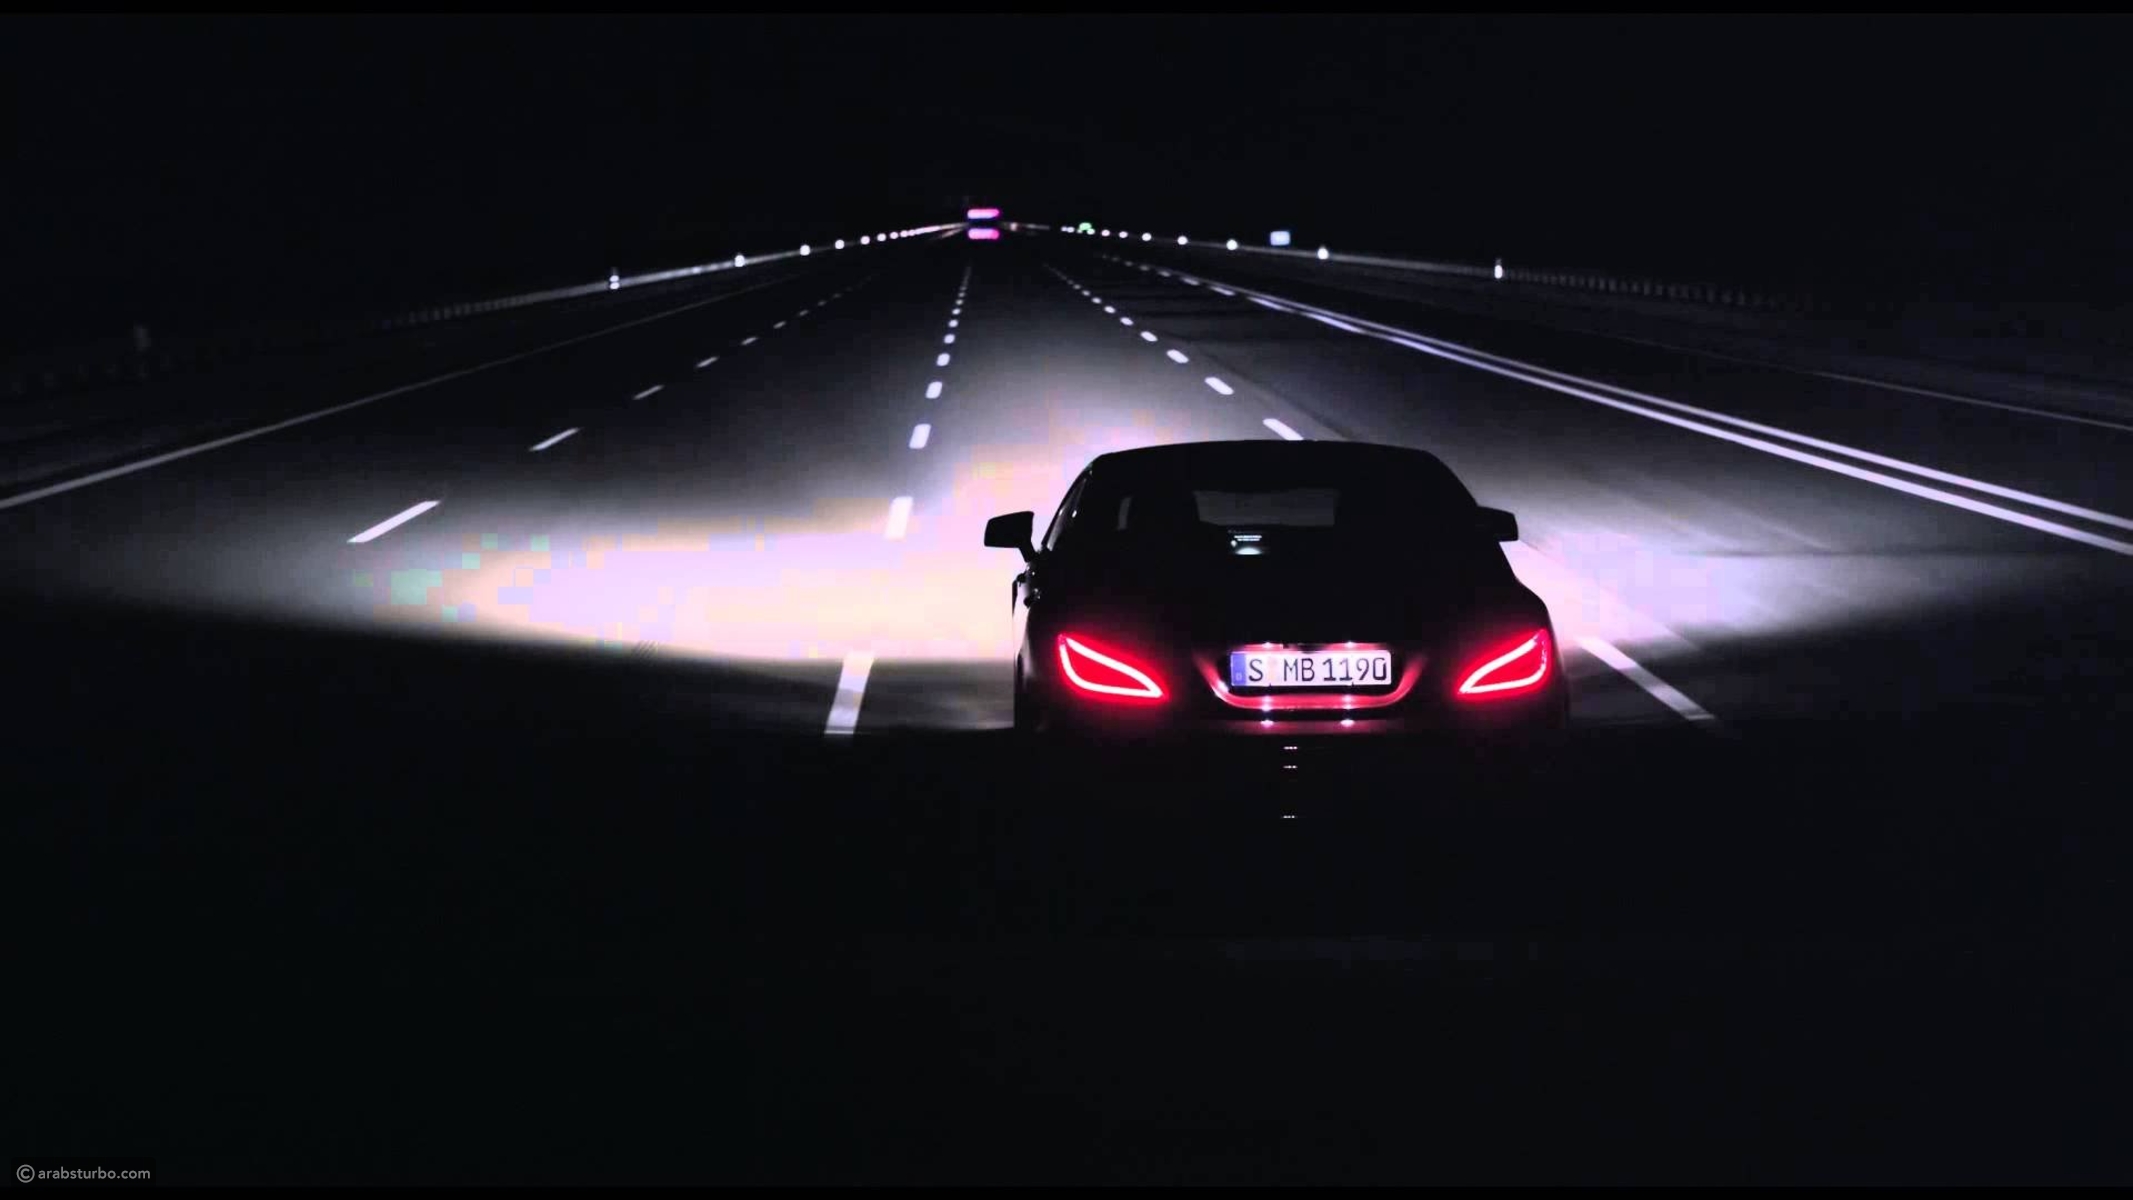 Песни а в машине едет черная машина. Mercedes Benz c63 AMG белая на трассе в потоке. Mercedes Xenon Light. Машина едет в темноте. Автомобиль на ночной дороге.